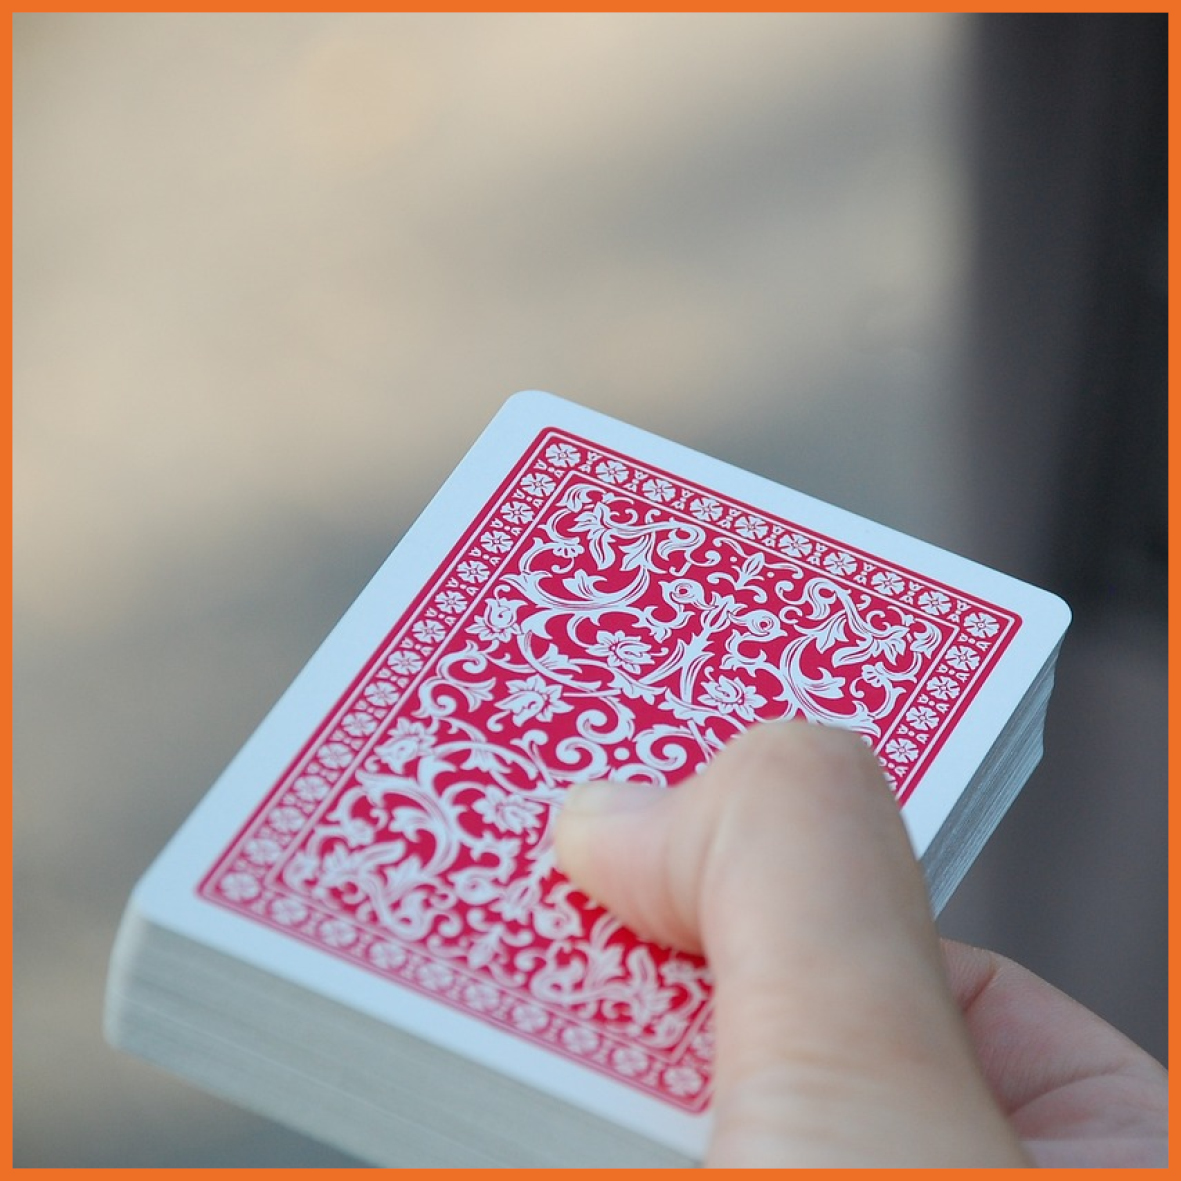 Billede af en hånd der holder spillekort.